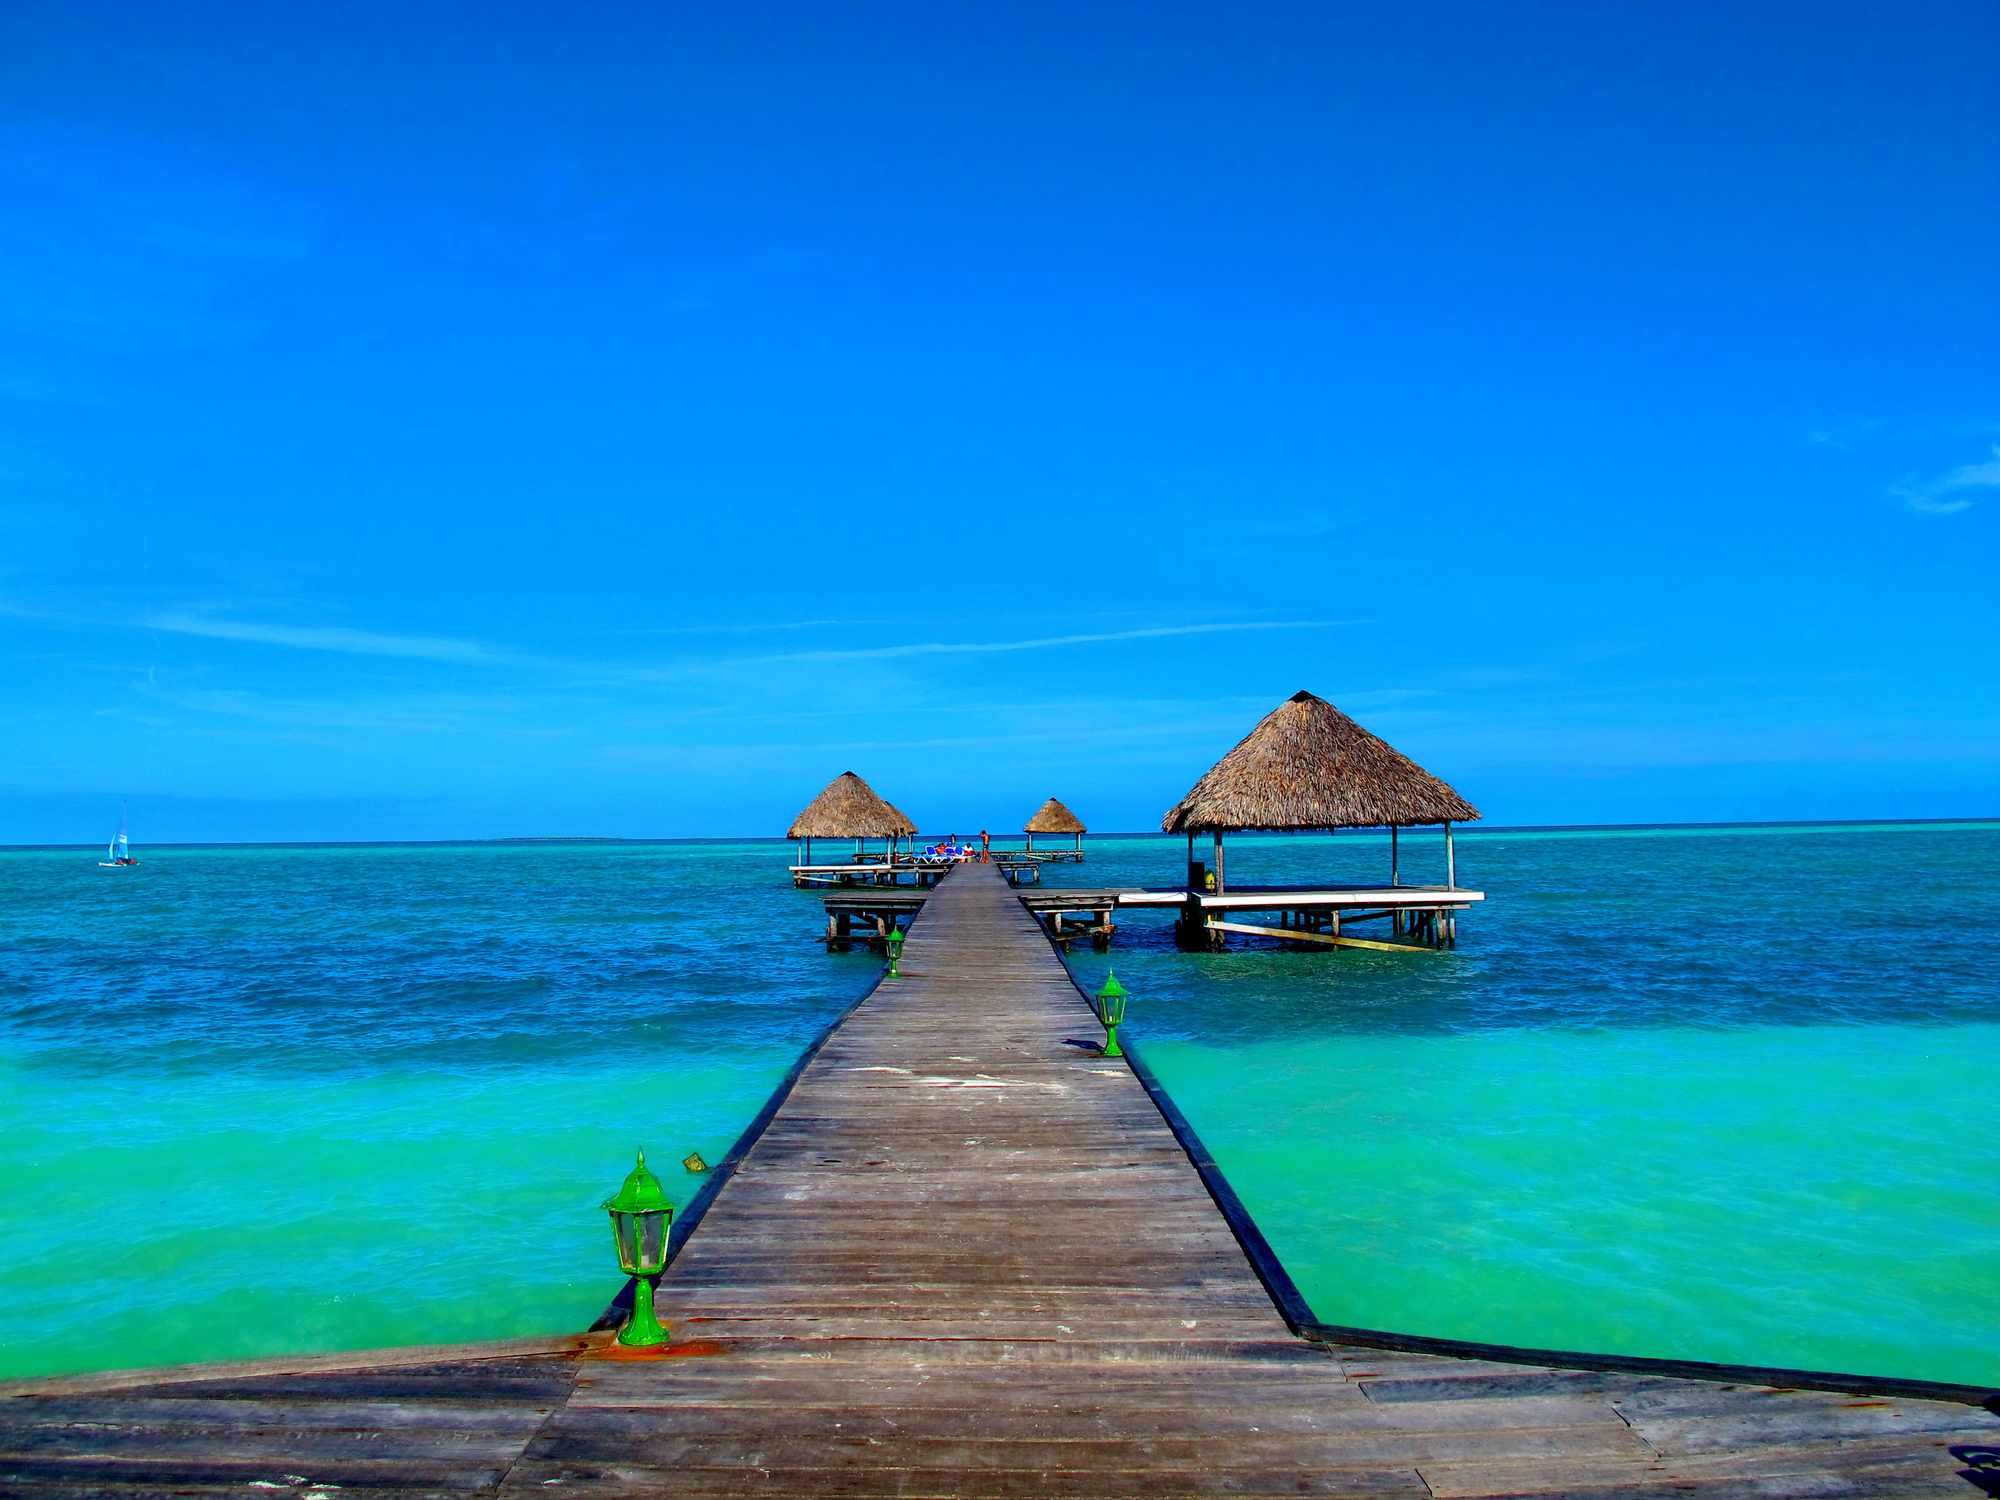 muelle de madera que conduce a tres cabañas con techo de paja sobre el agua azul y turquesa transparente bajo un cielo azul brillante en Cayo Coco